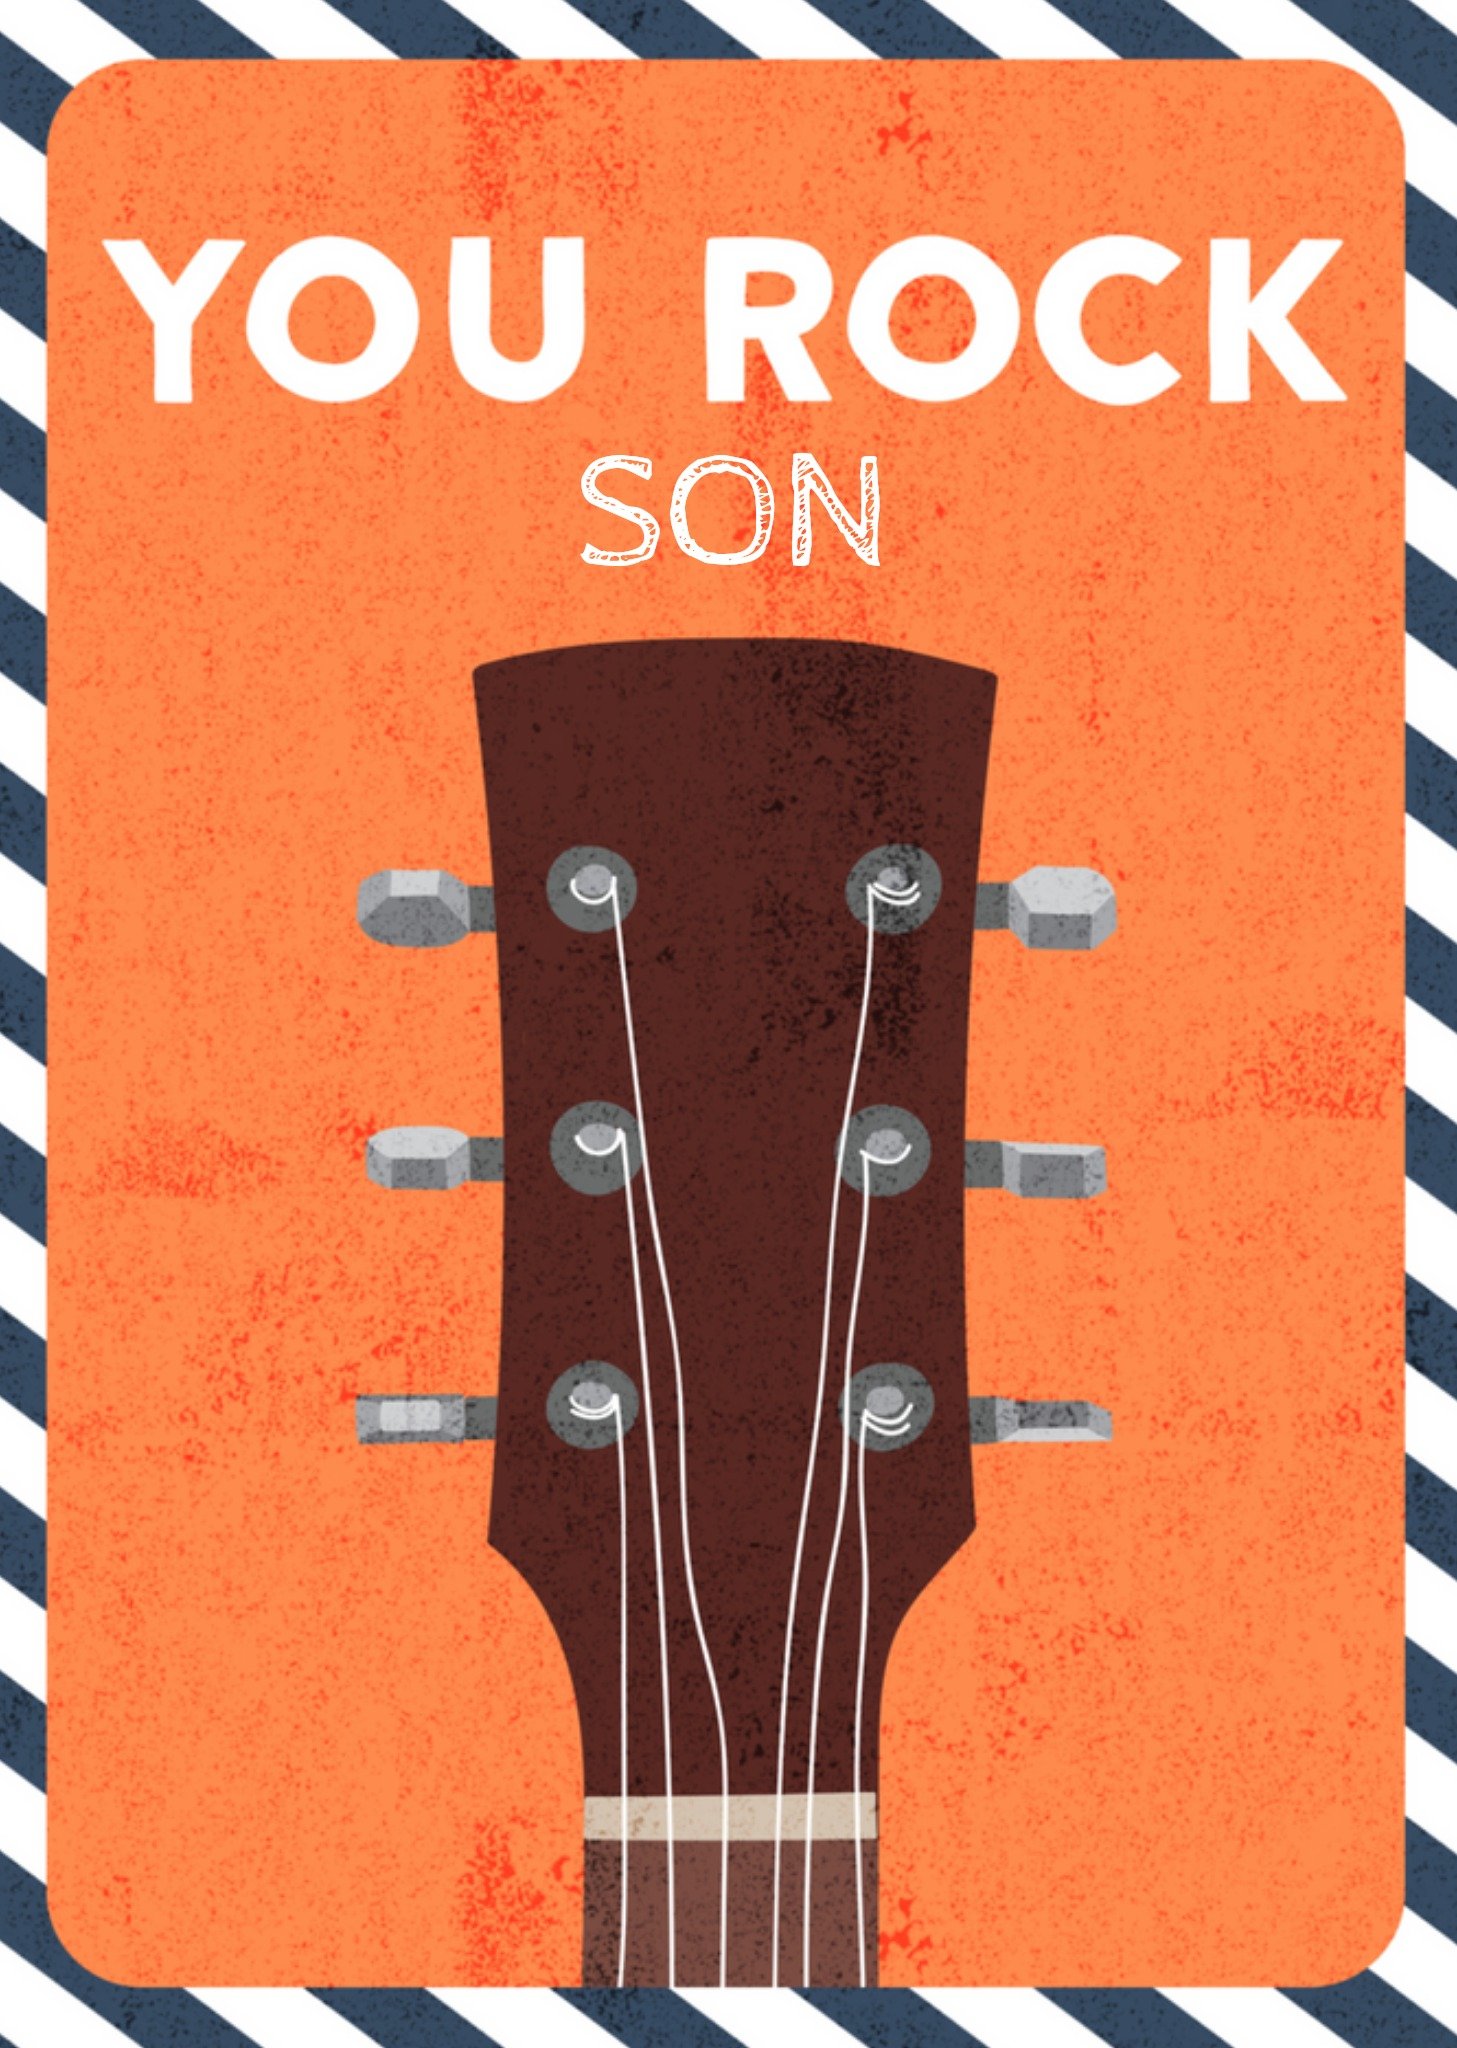 Verjaardagskaart - You rock son